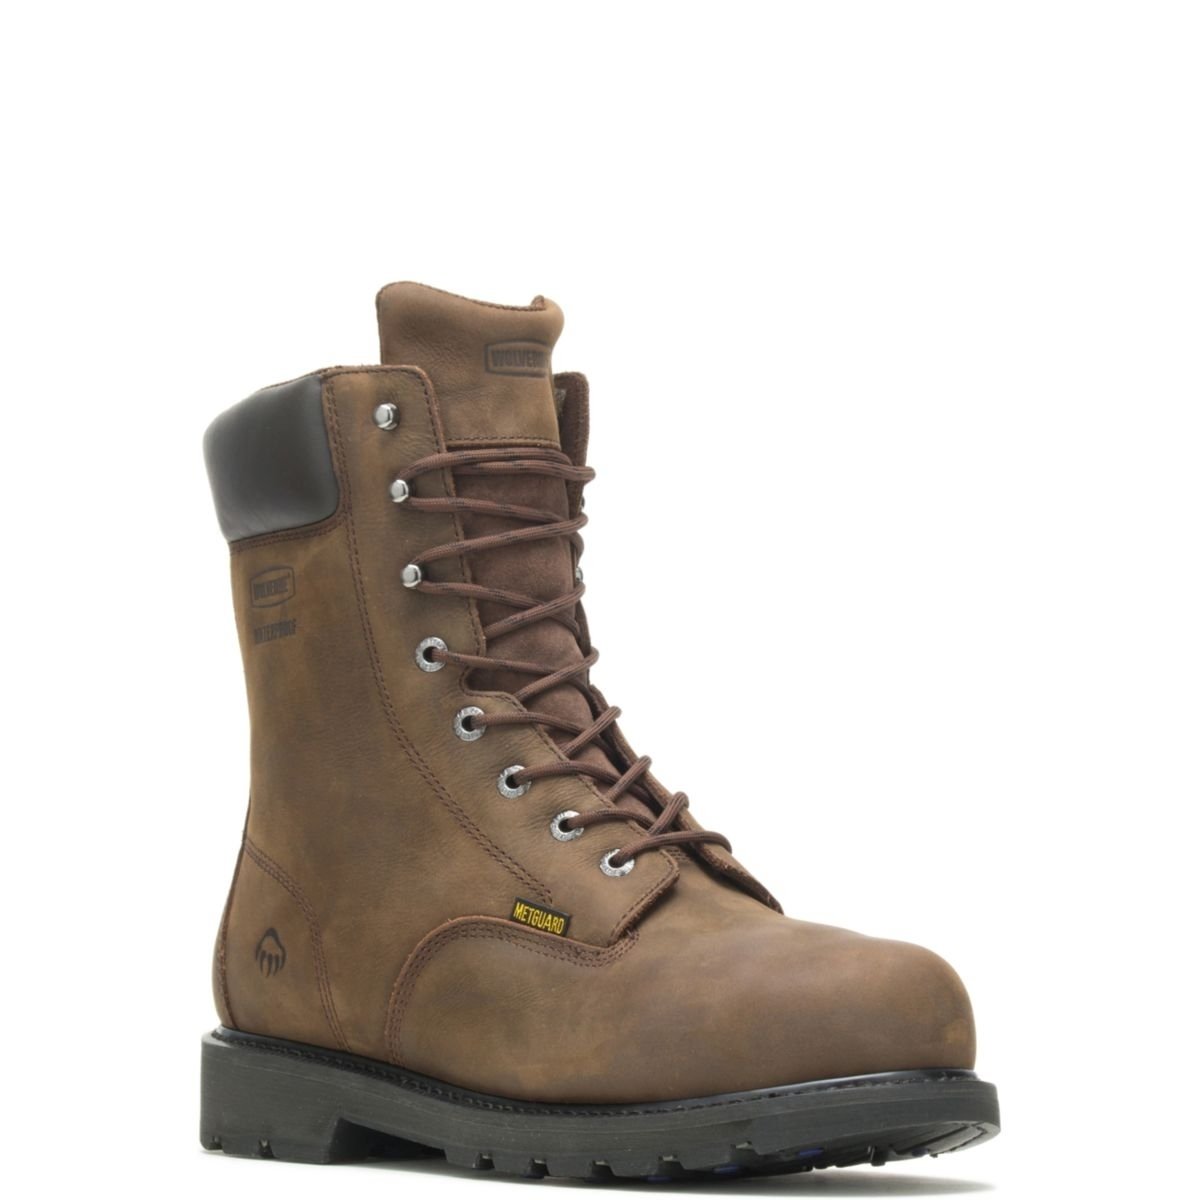 WOLVERINE Men's McKay 8 Waterproof Steel Toe Work Boot Brown - W05680 10 BROWN - BROWN, 10.5 X-Wide